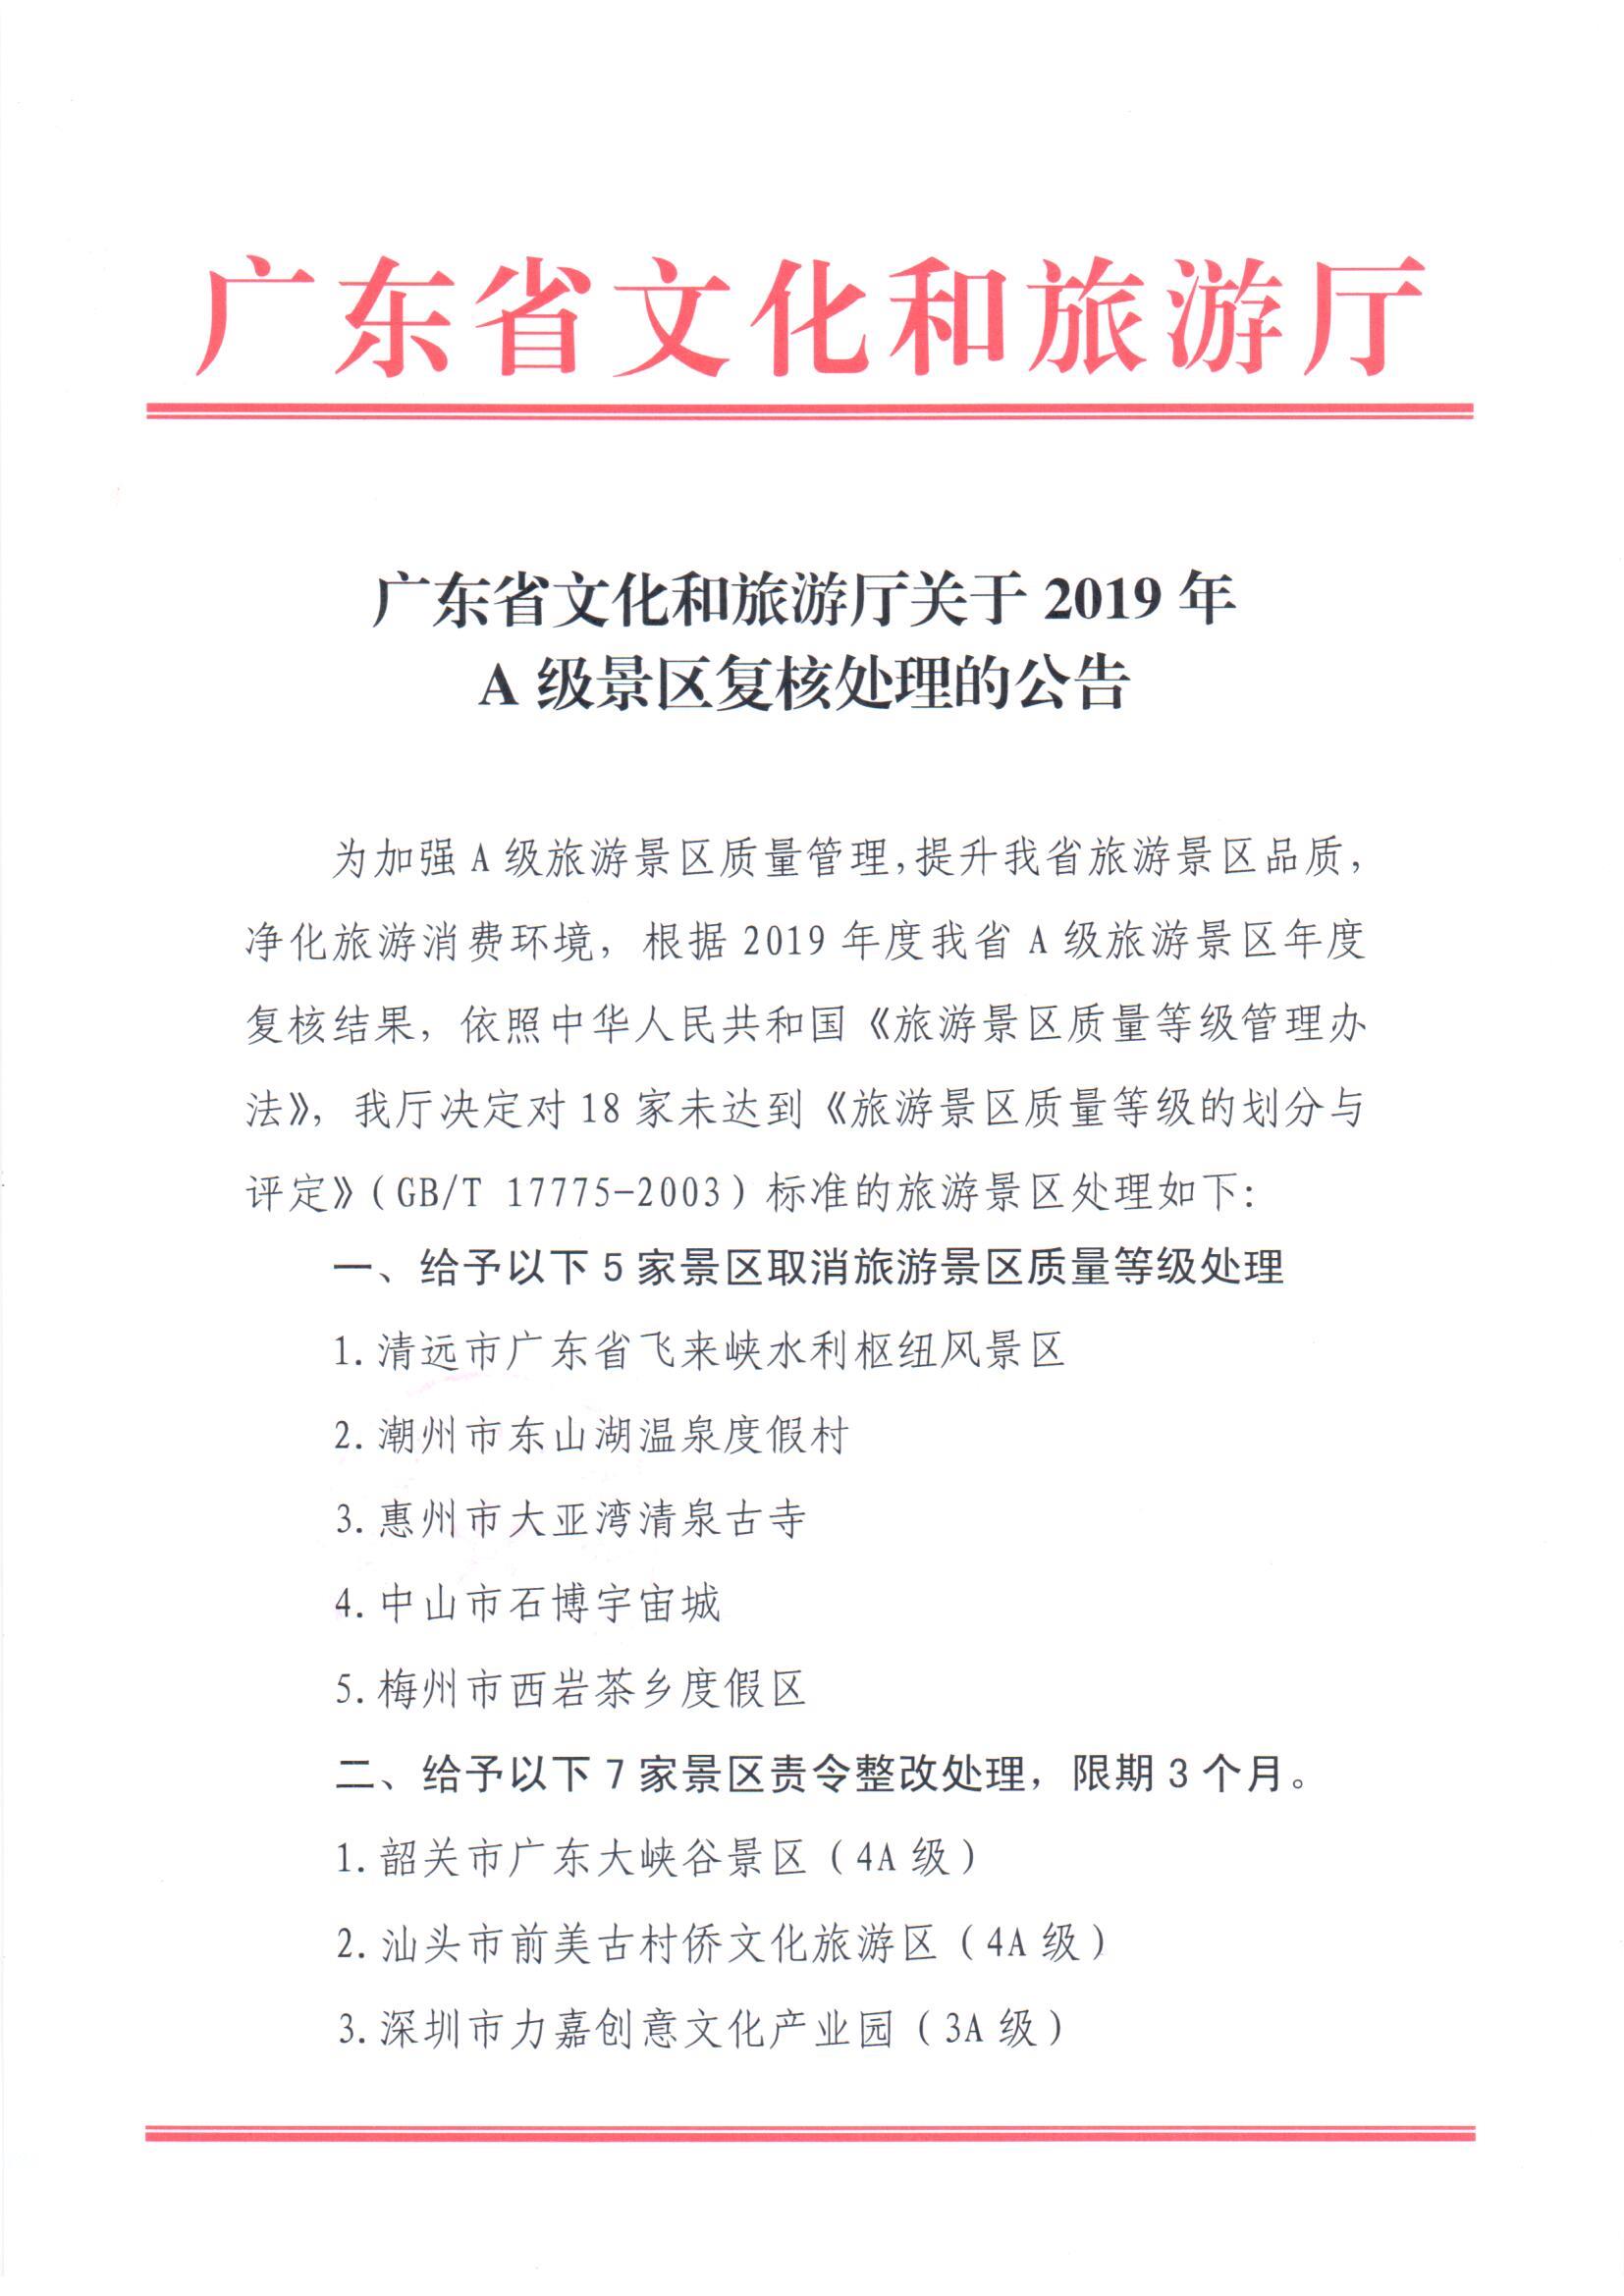 6.广东省文化和旅游厅关于2019年A级景区复核处理的公告_页面_1.jpg